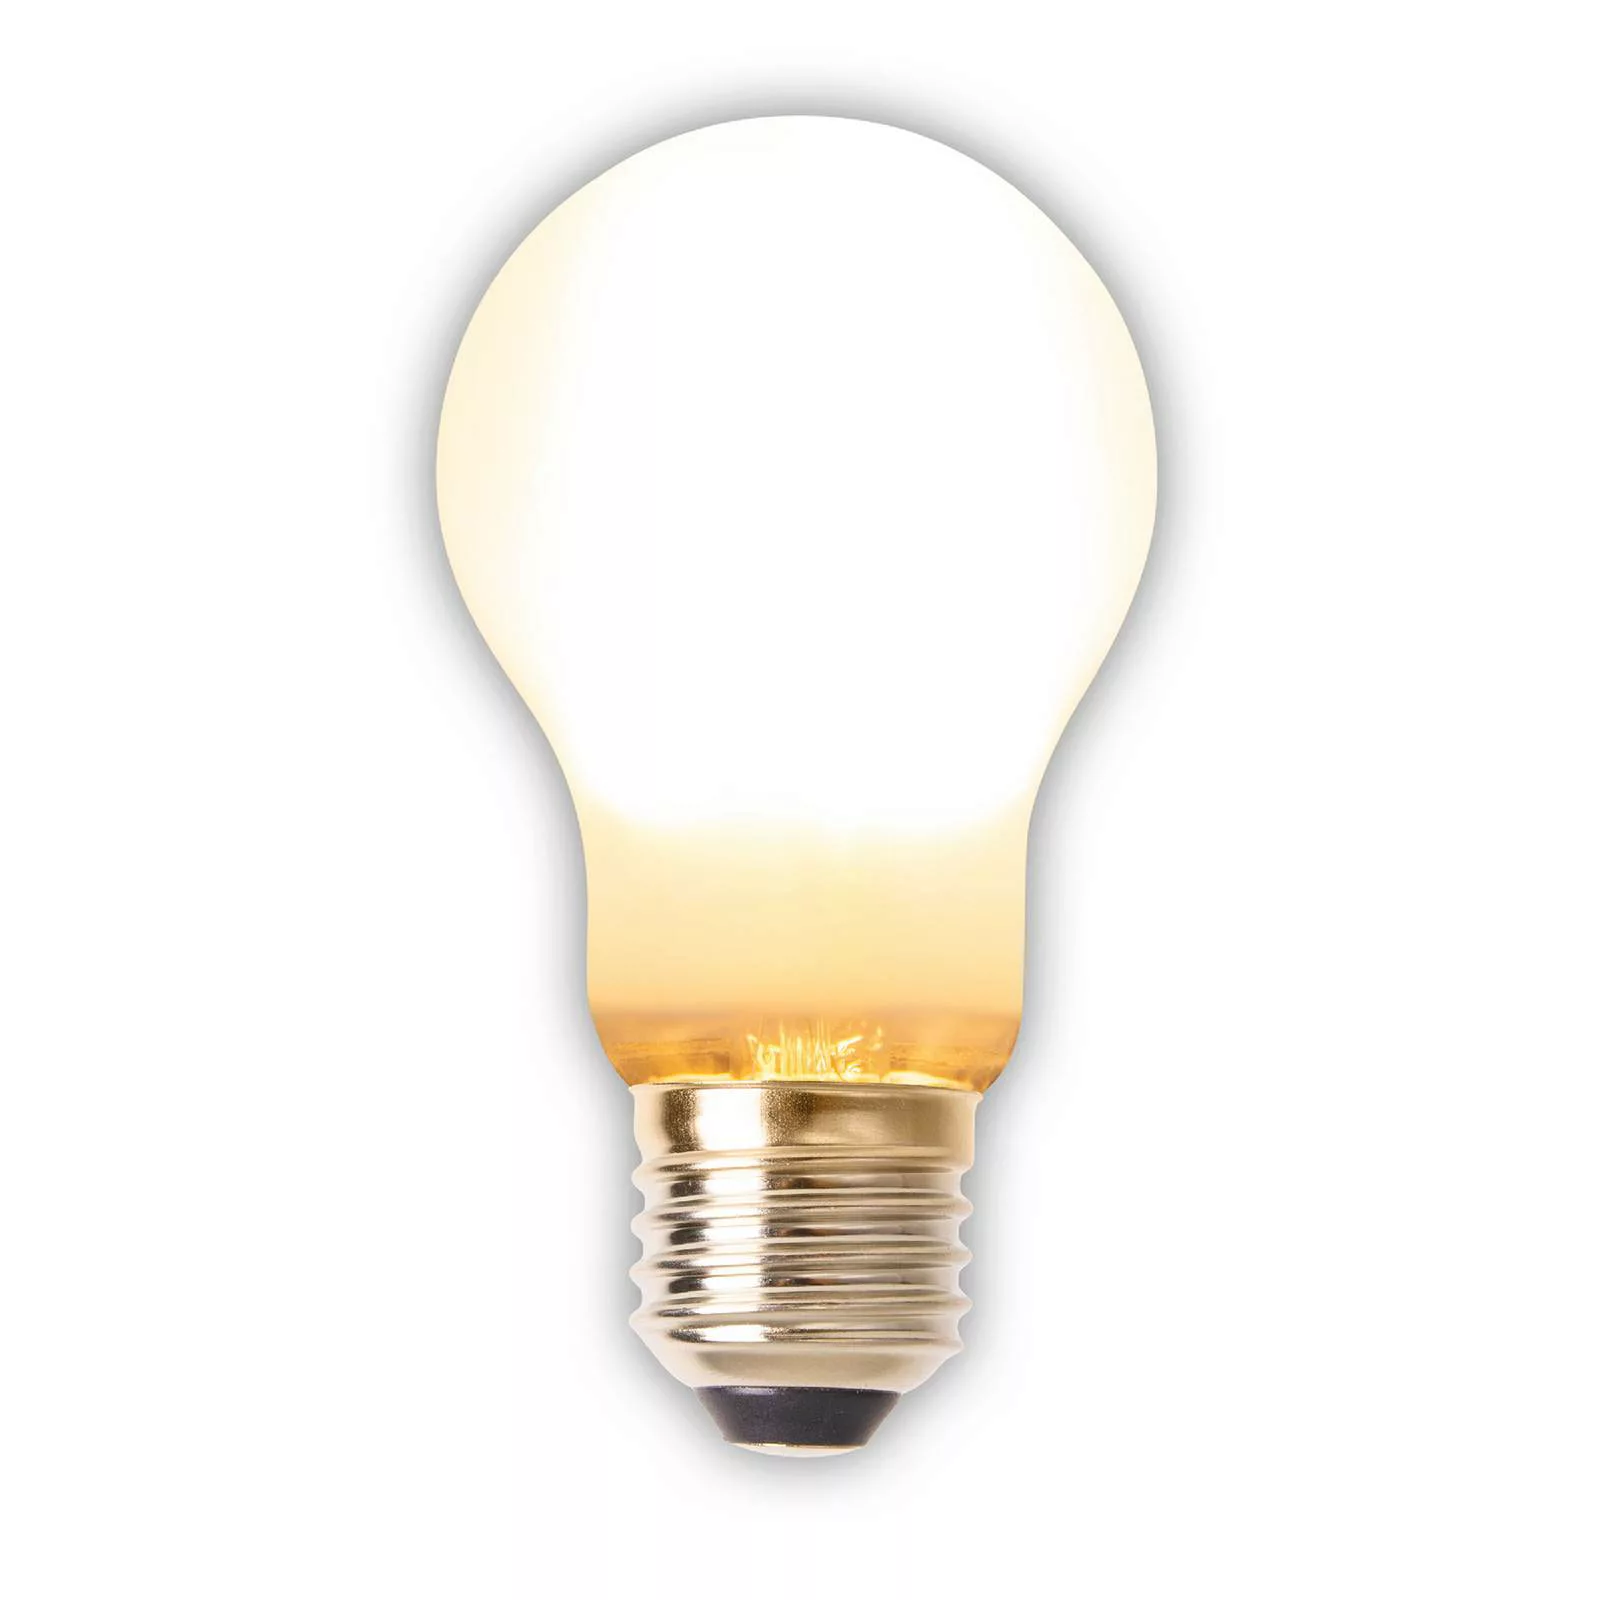 Näve Leuchten 6er-Set LED Leuchtmittel E27 weiß günstig online kaufen